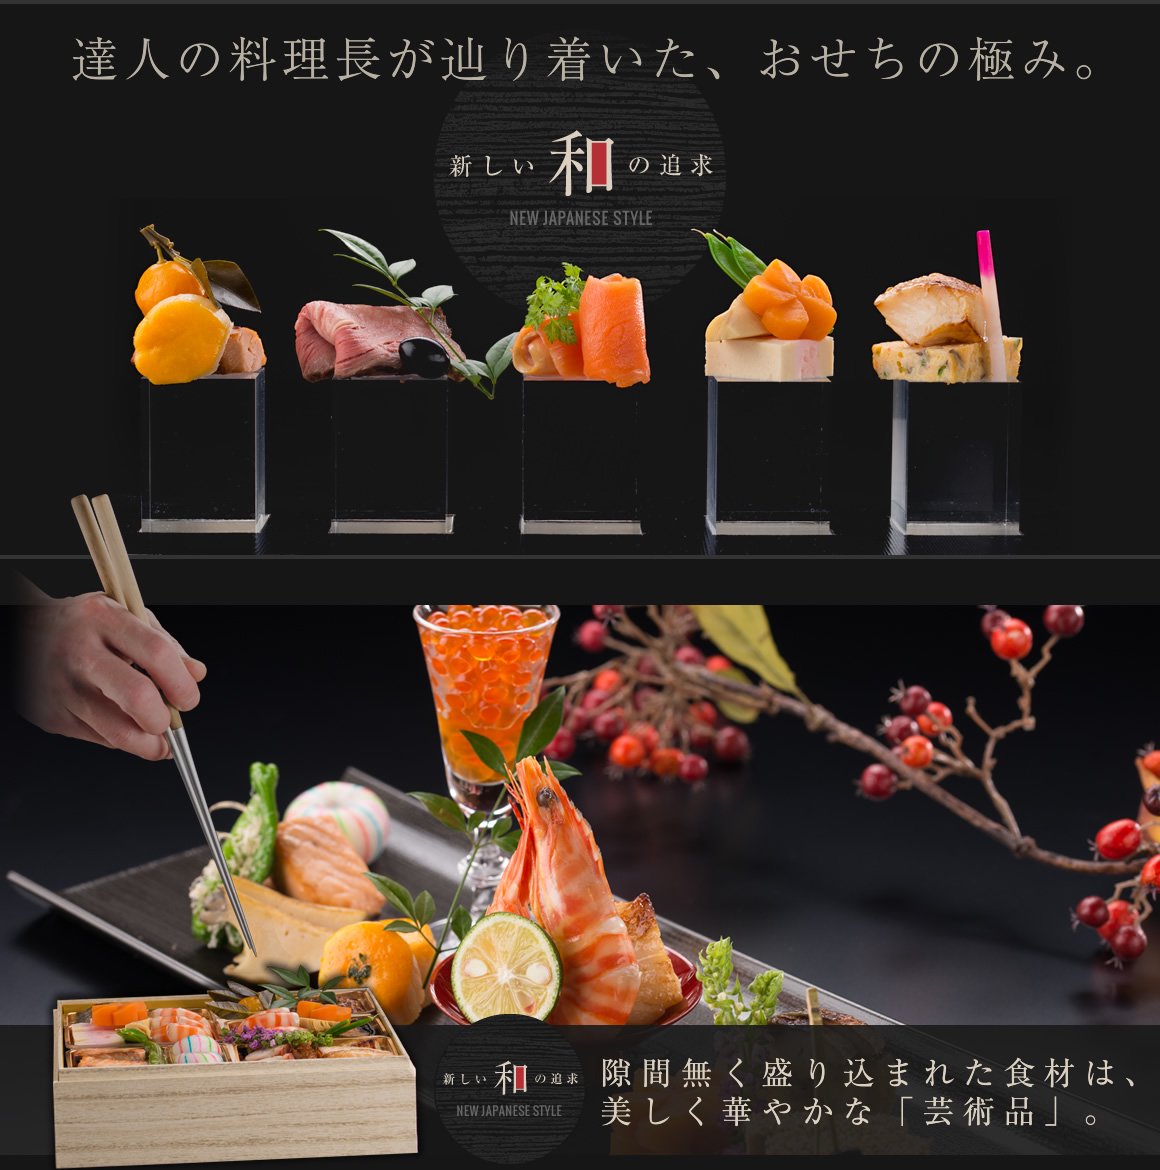 達人の料理長が辿り着いた、おせちの極み。新しい和の追求 NEW JAPANESE STYLE 隙間無く盛り込まれた食材は、美しく華やかな「芸術品」。